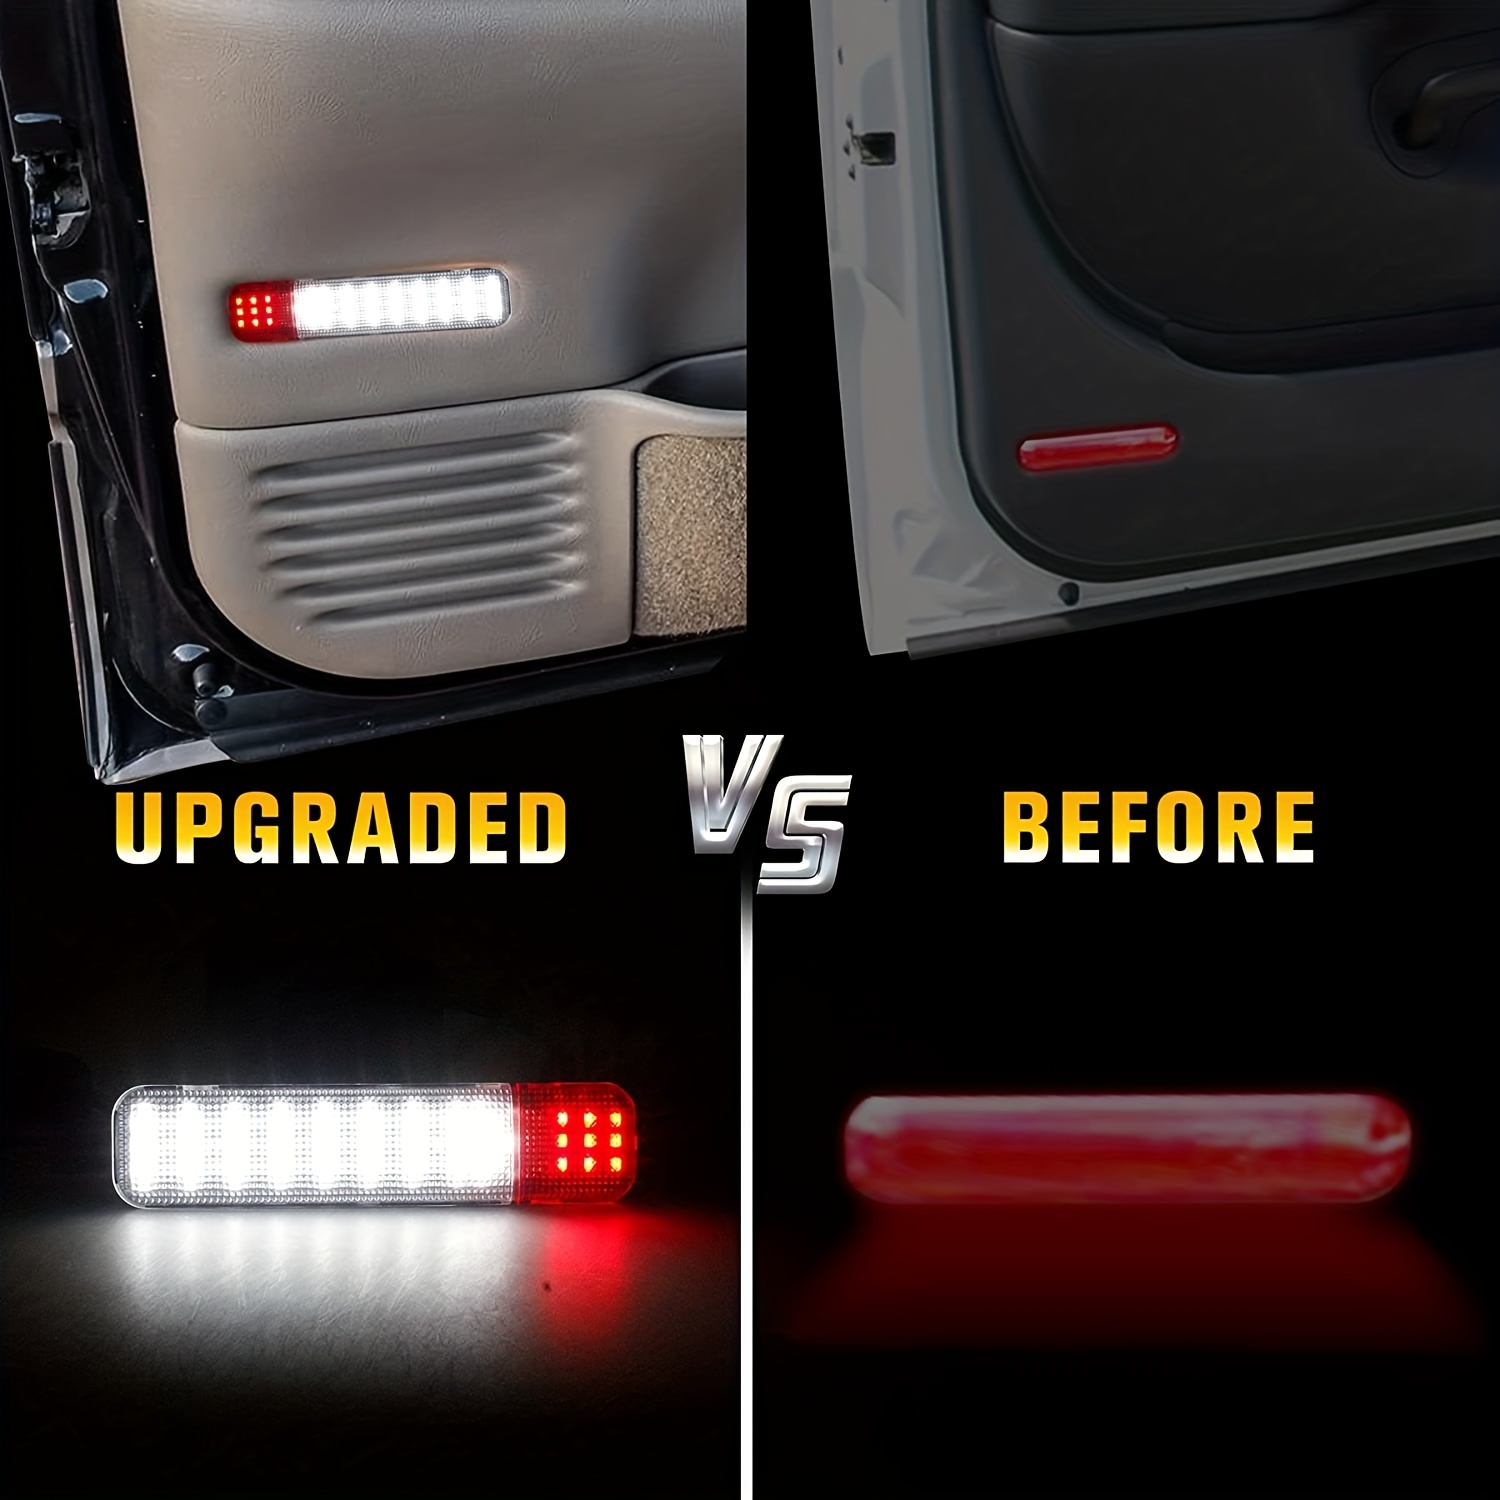  HConce Tira de luces LED para puerta de coche, 2 luces LED de  3.9 ft, 144 luces LED para interiores de puerta de coche, utilizadas para  iluminación, decoración y advertencia, anticolisión